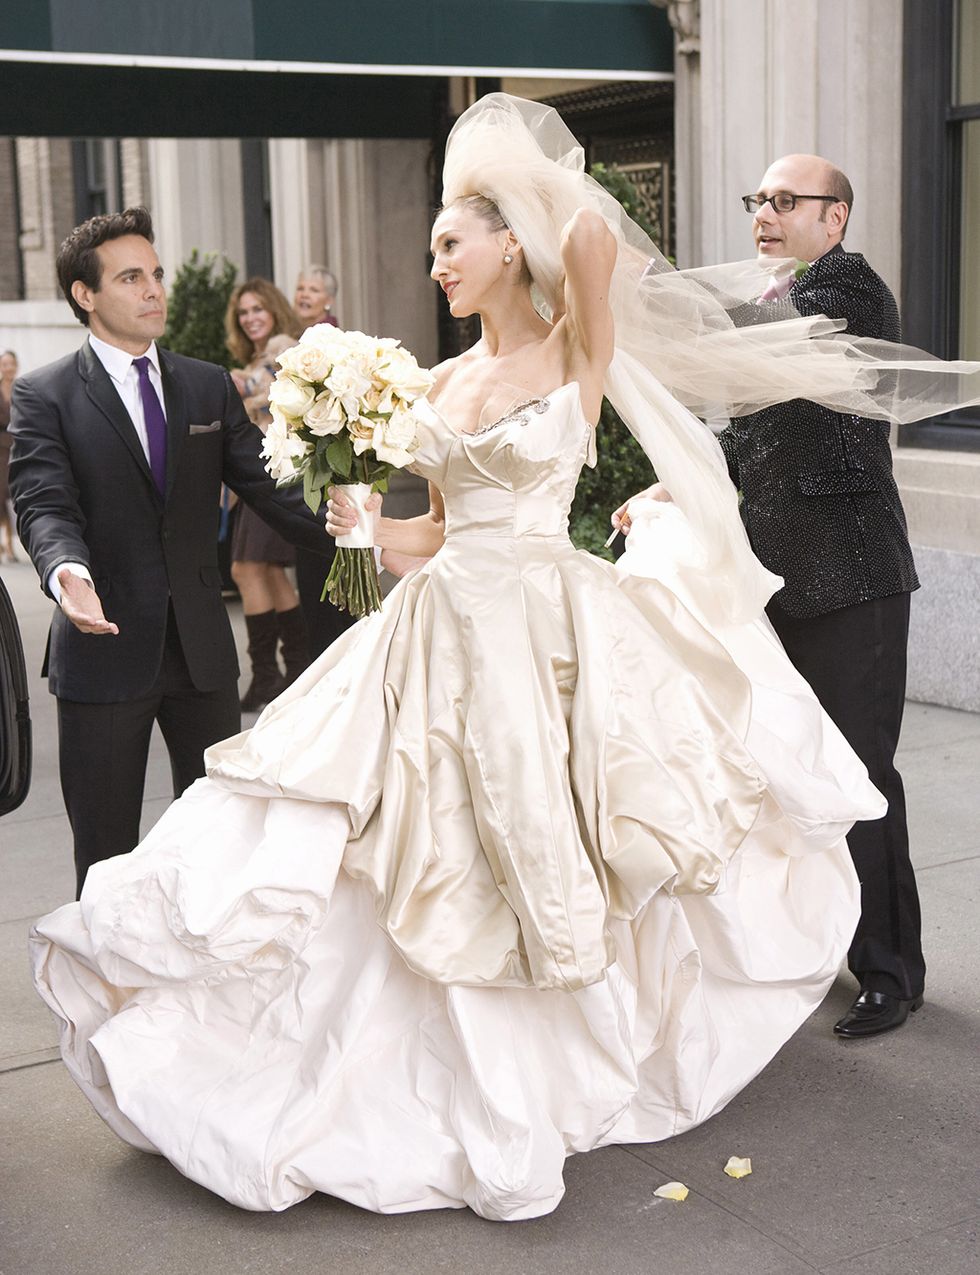 <p>Fueron muchos los 'outfits' que hicieron de esta una serie mítica en el campo de lo 'fashionista', pero el vestido de boda que lució Sarah Jessica Parker en el filme fue la culminación. Es obra de Vivienne Westwood y uno de sus diseños más apreciados.</p>